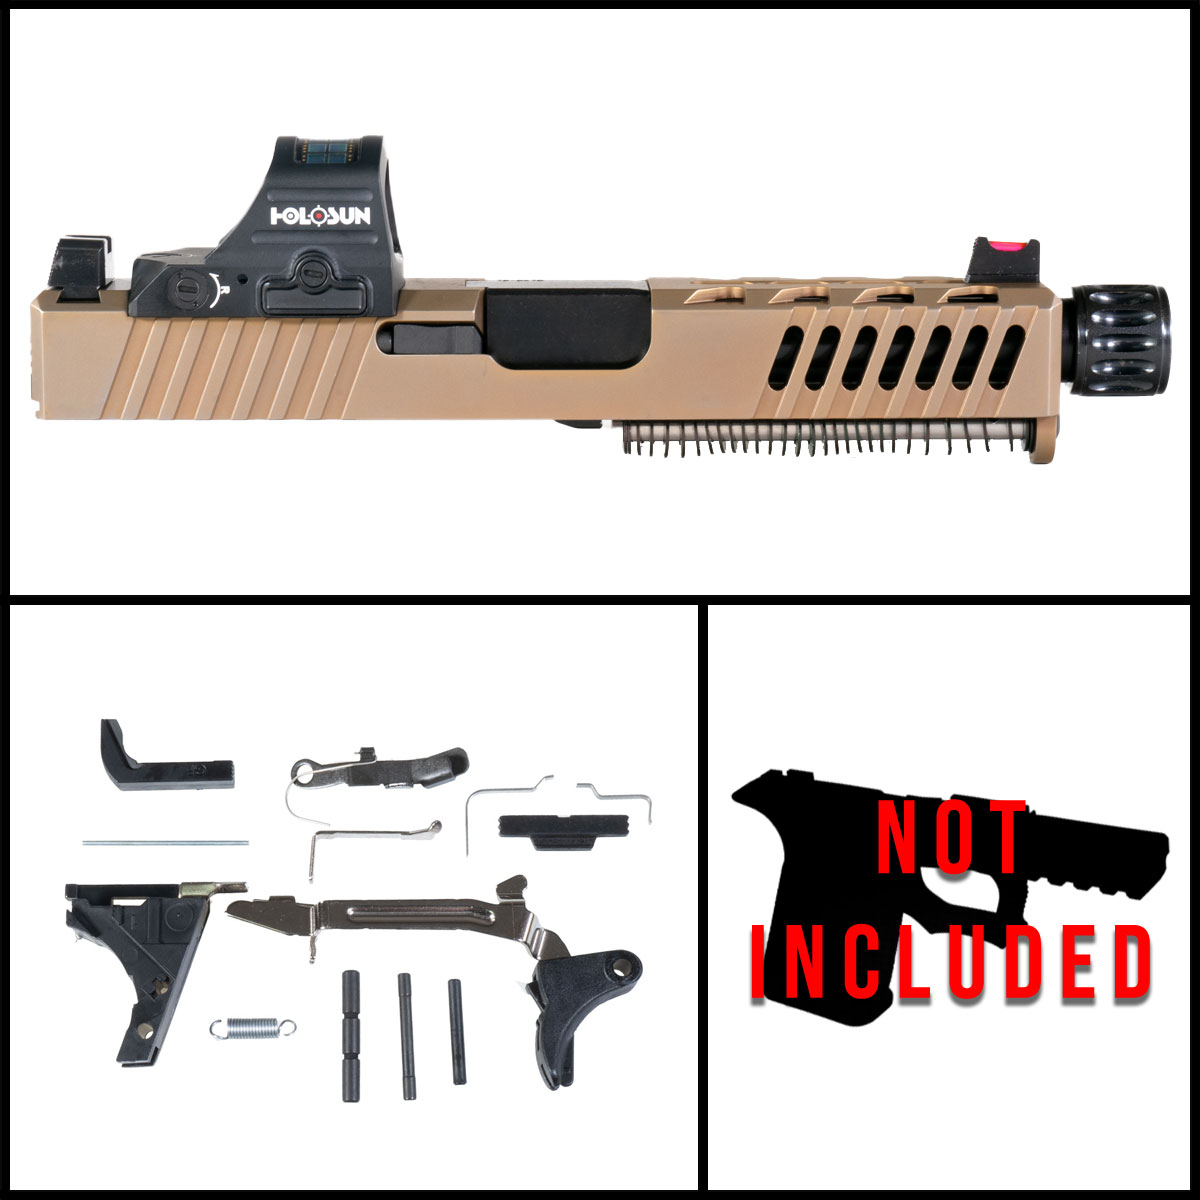 OTD 'Oxide' 9mm Full Pistol Build Kit (Everything Minus Frame) - Glock 19 Compatible